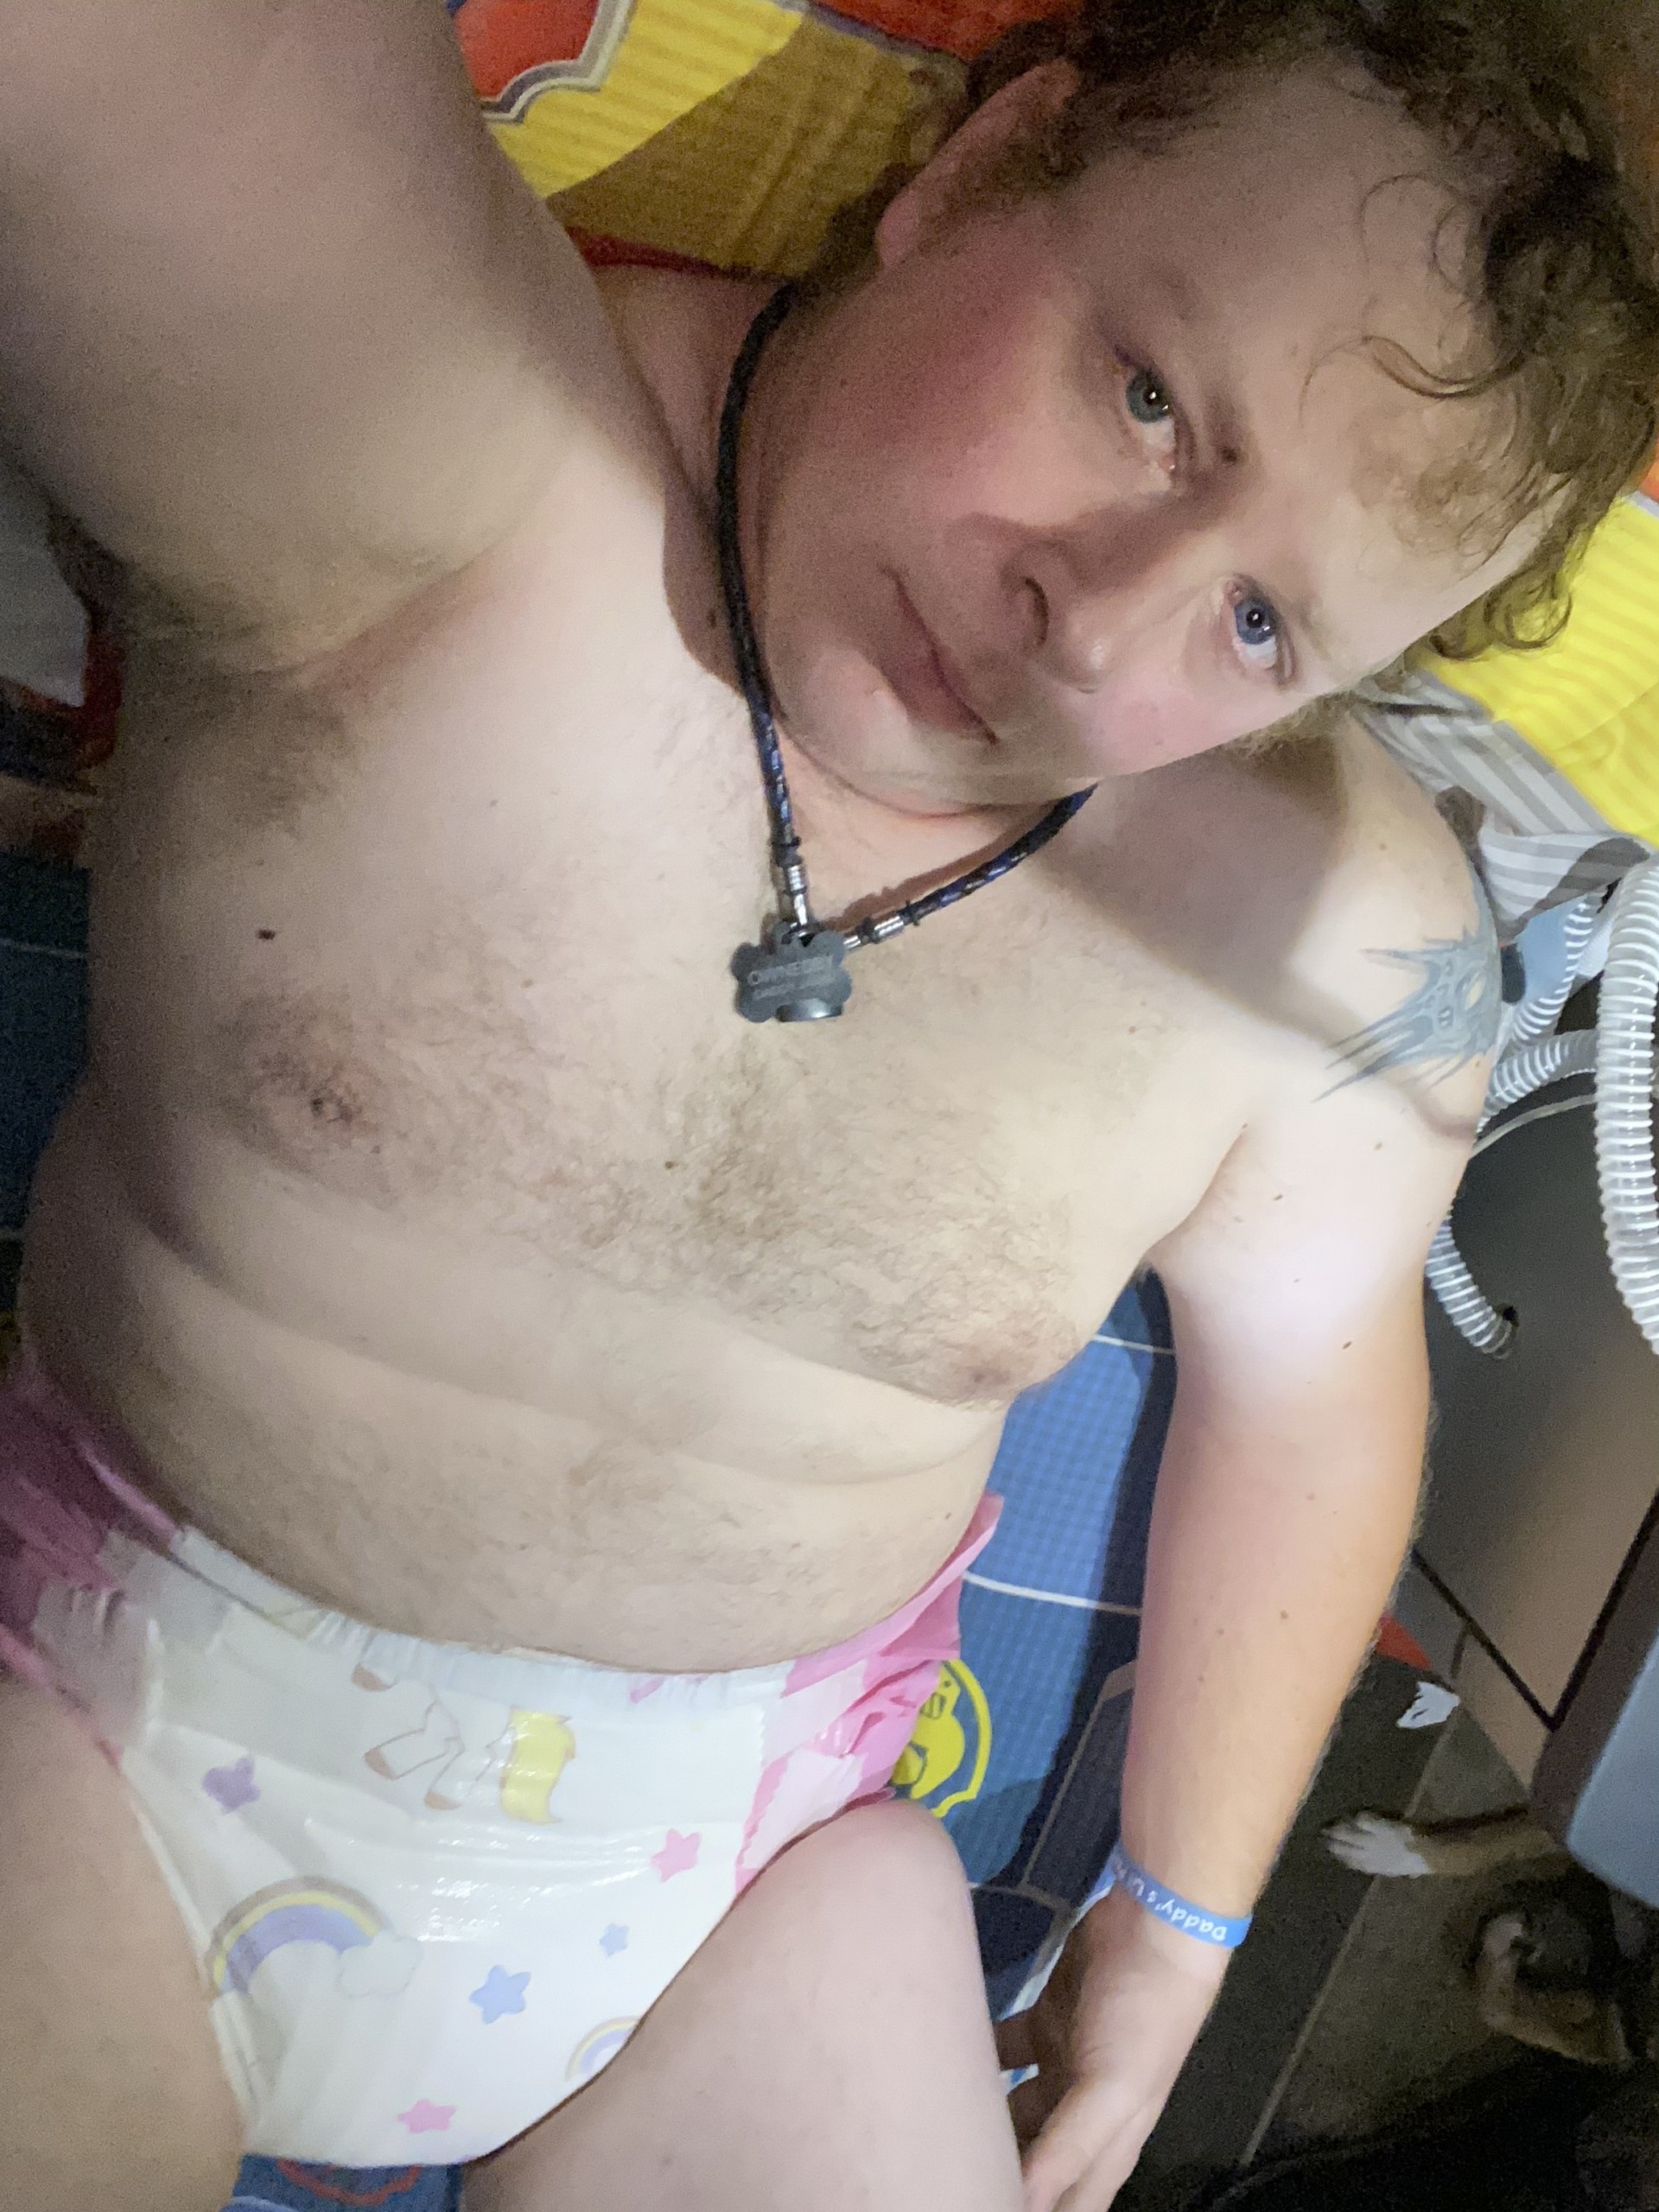 Corey Michael Wandling | 28 year old diaper wearing faggot!